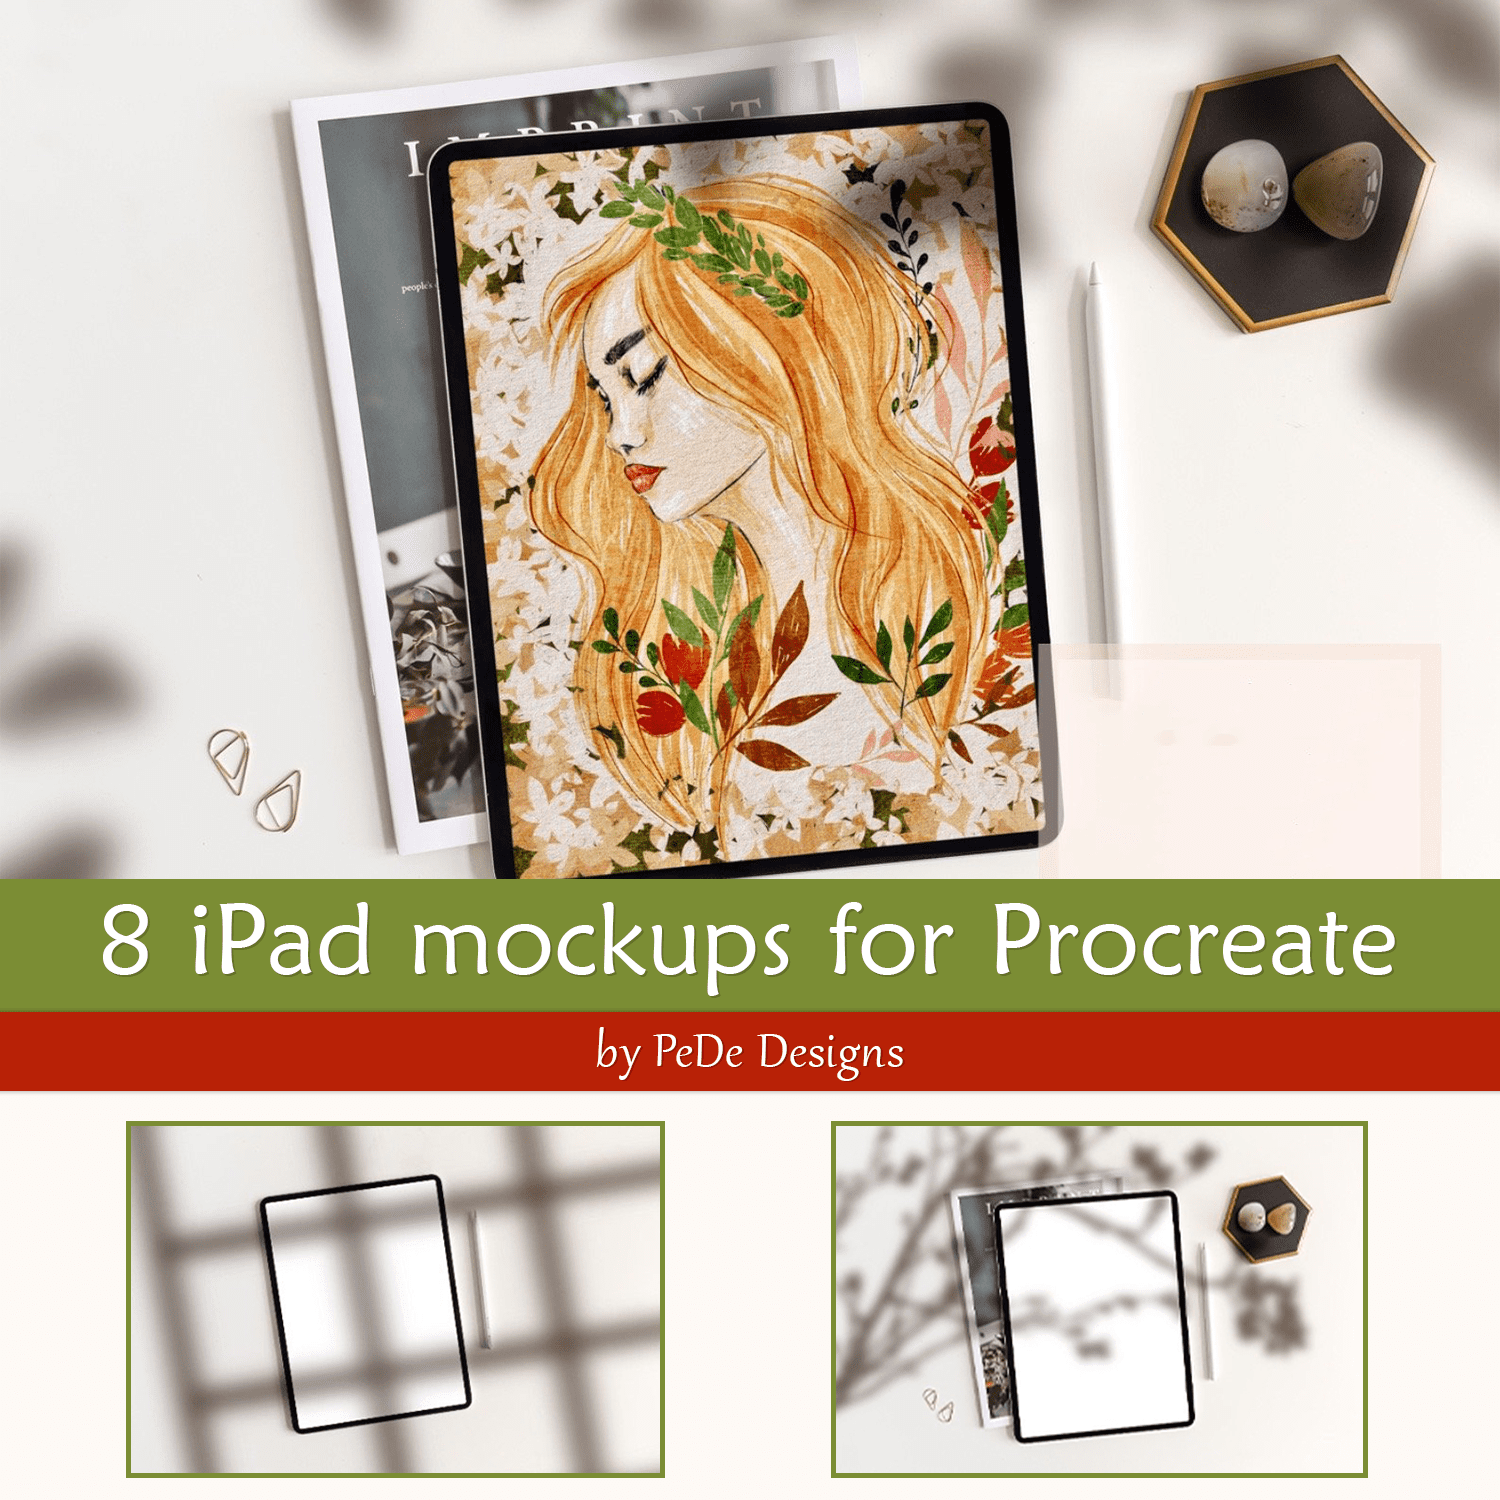 8 iPad mockups for Procreate cover.